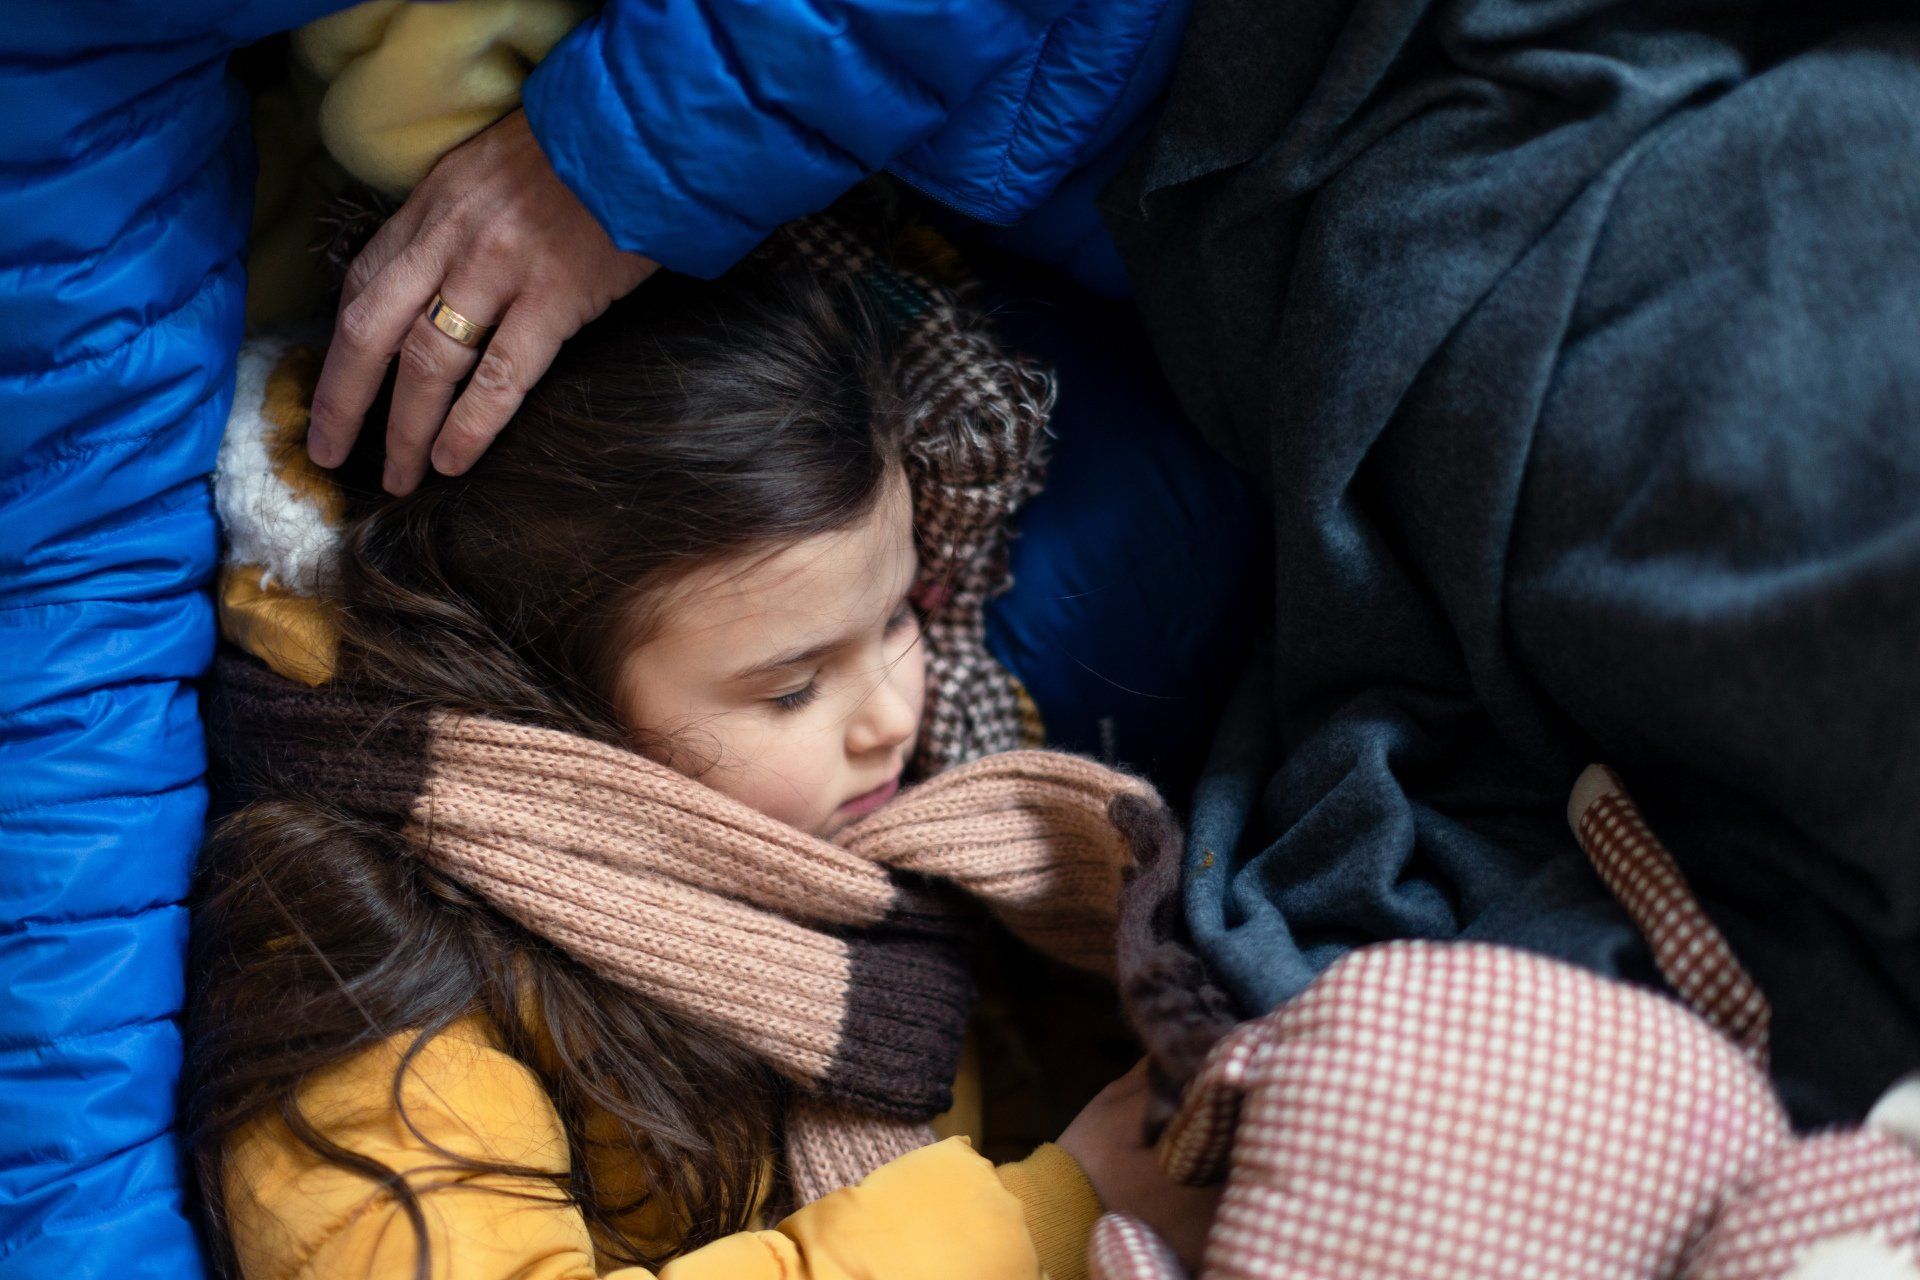 Refugiados de guerra ucranianos en refugio temporal y centro de ayuda niña durmiendo en el regazo de su madre